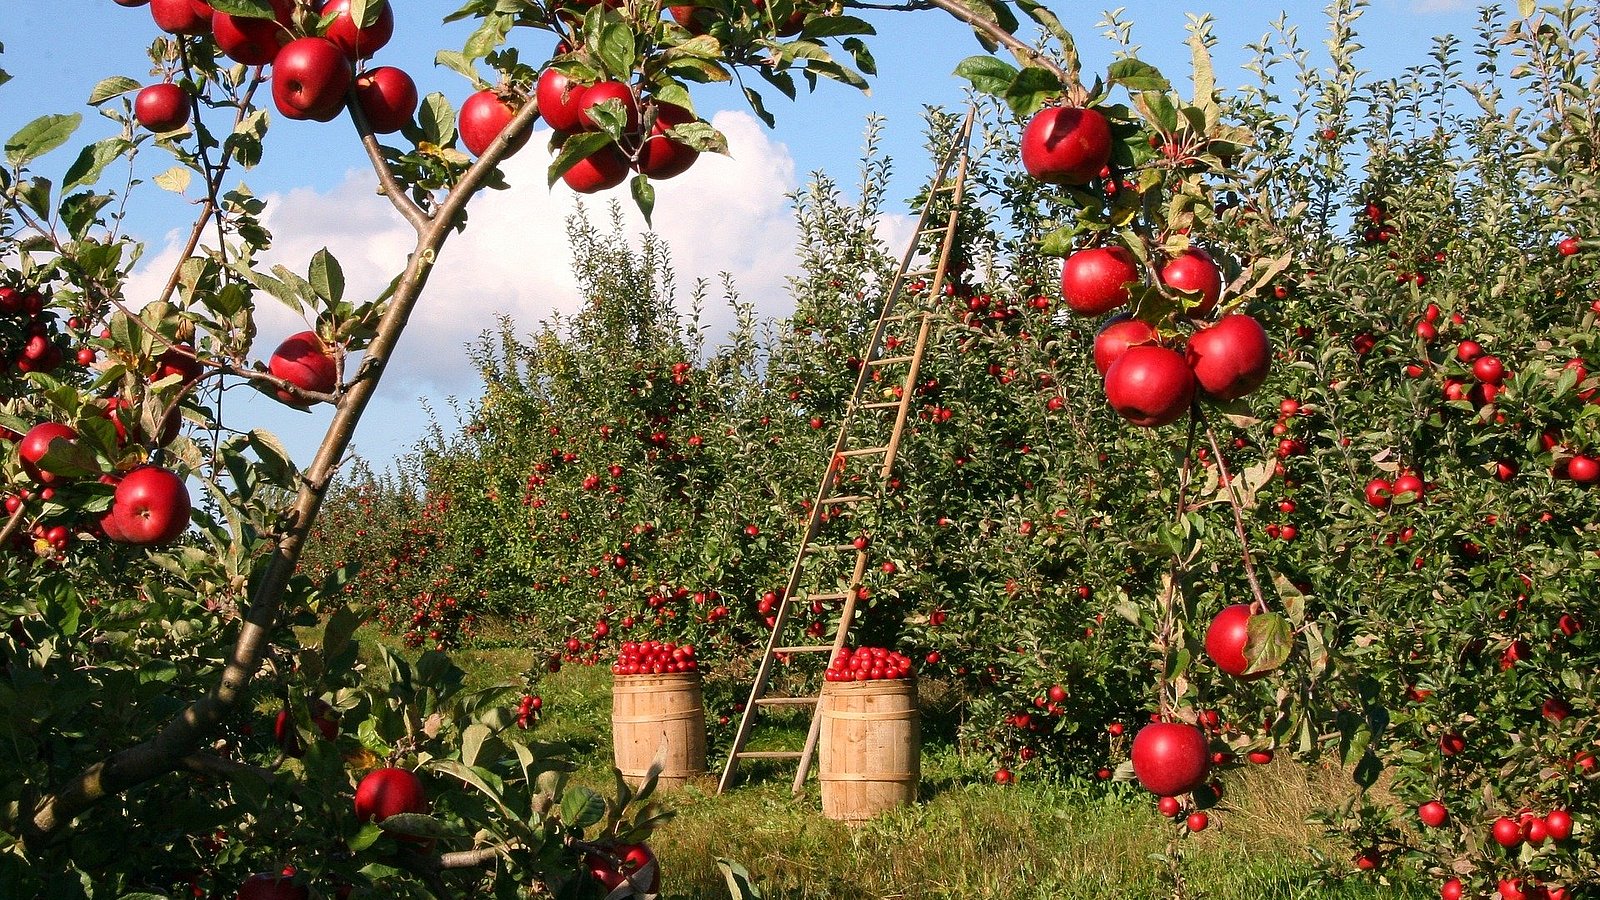 Erntesituation auf einer Wiese mit Apfelbäumen und reifen Äpfeln. 